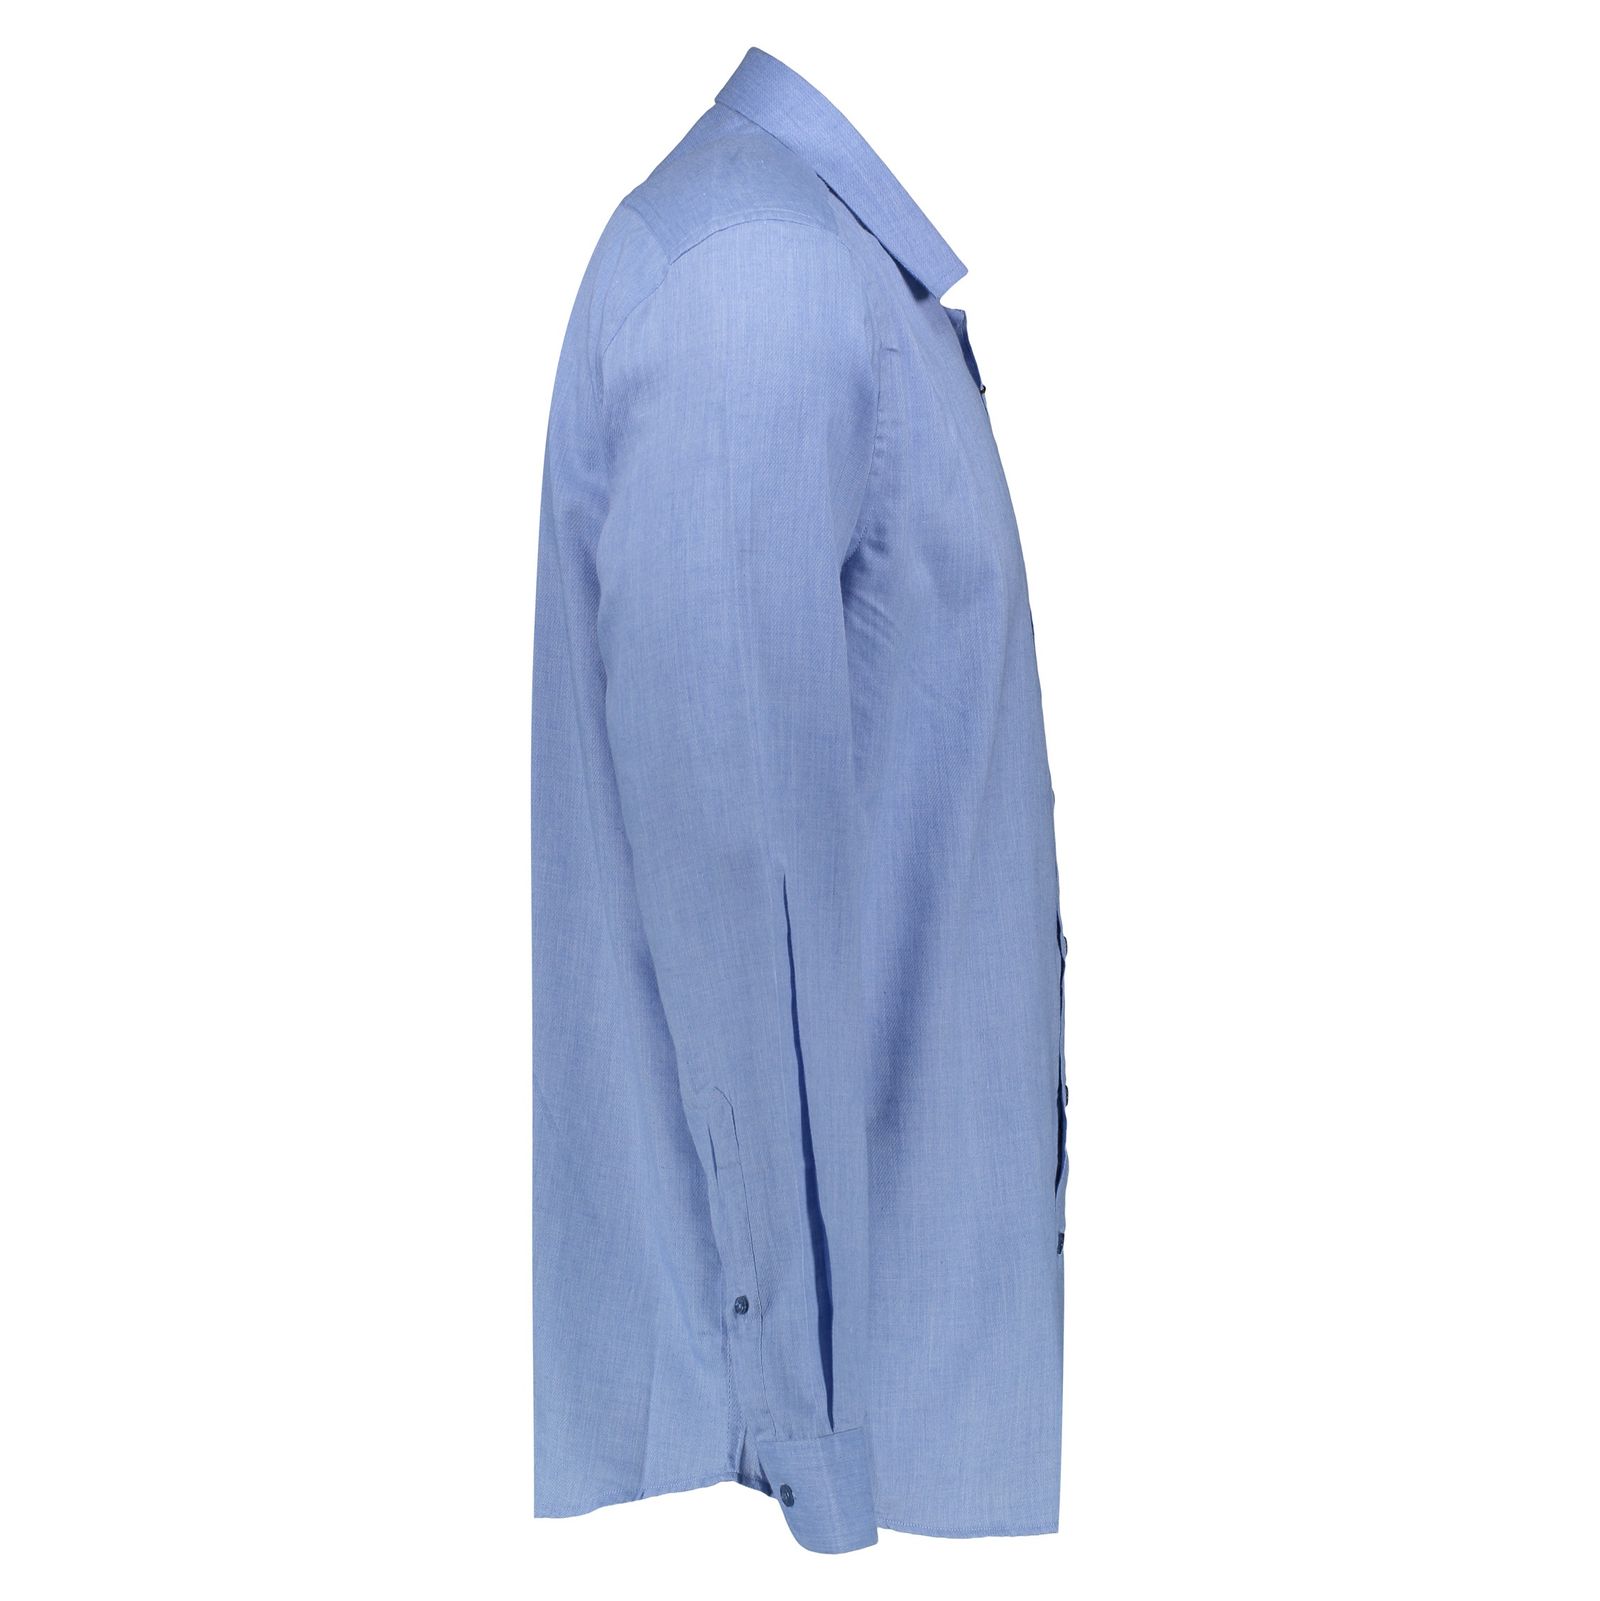 پیراهن مردانه لرد آرچر مدل 200114657 - آبی - 2